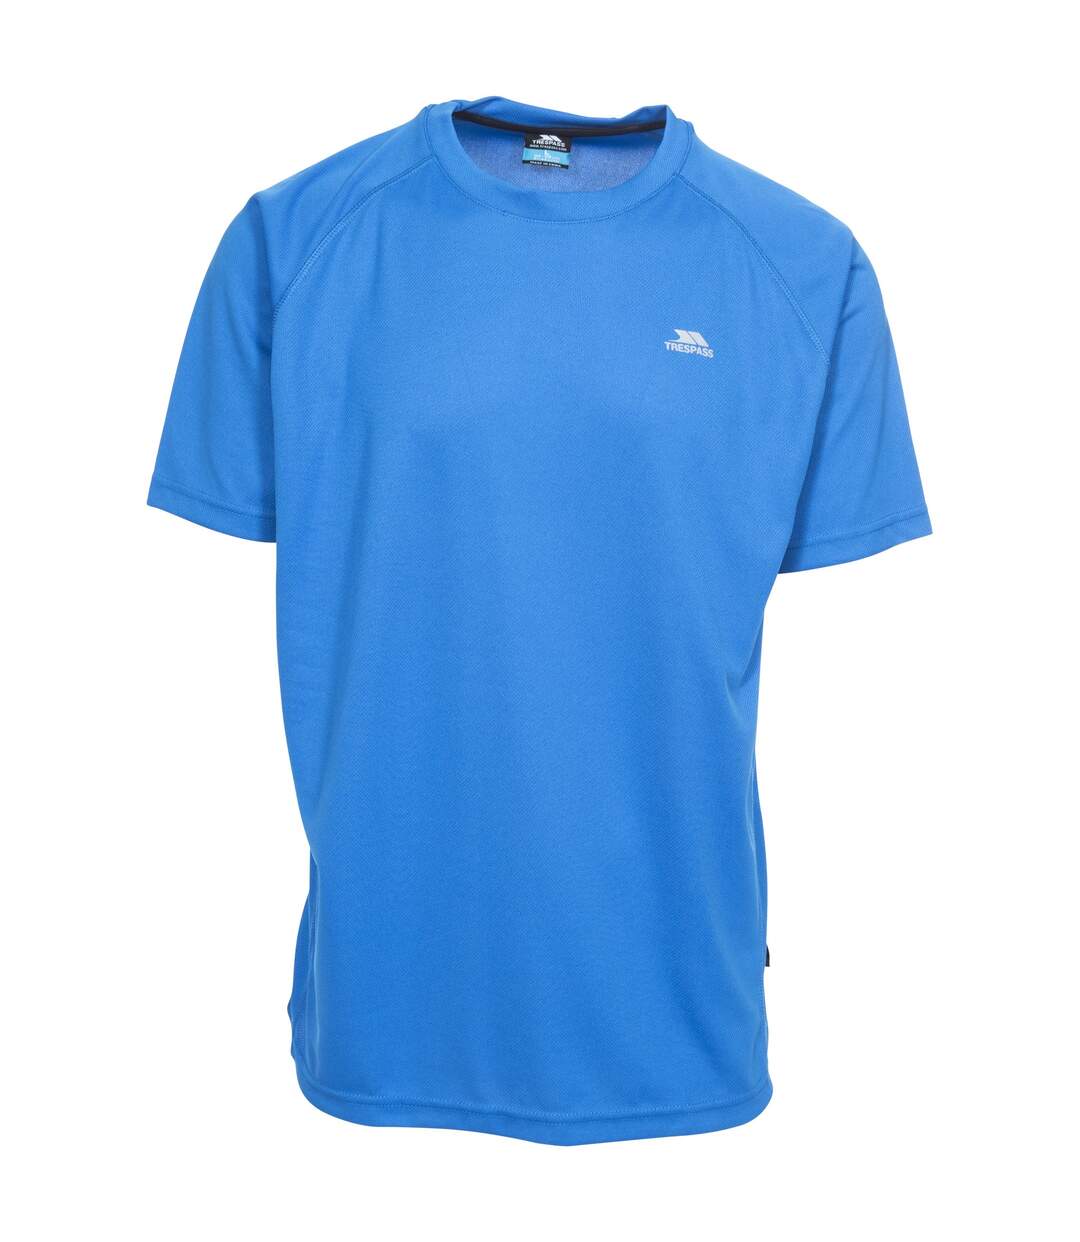 Trespass - T-shirt ACTIVE - Homme (Bleu vif) - UTTP2922